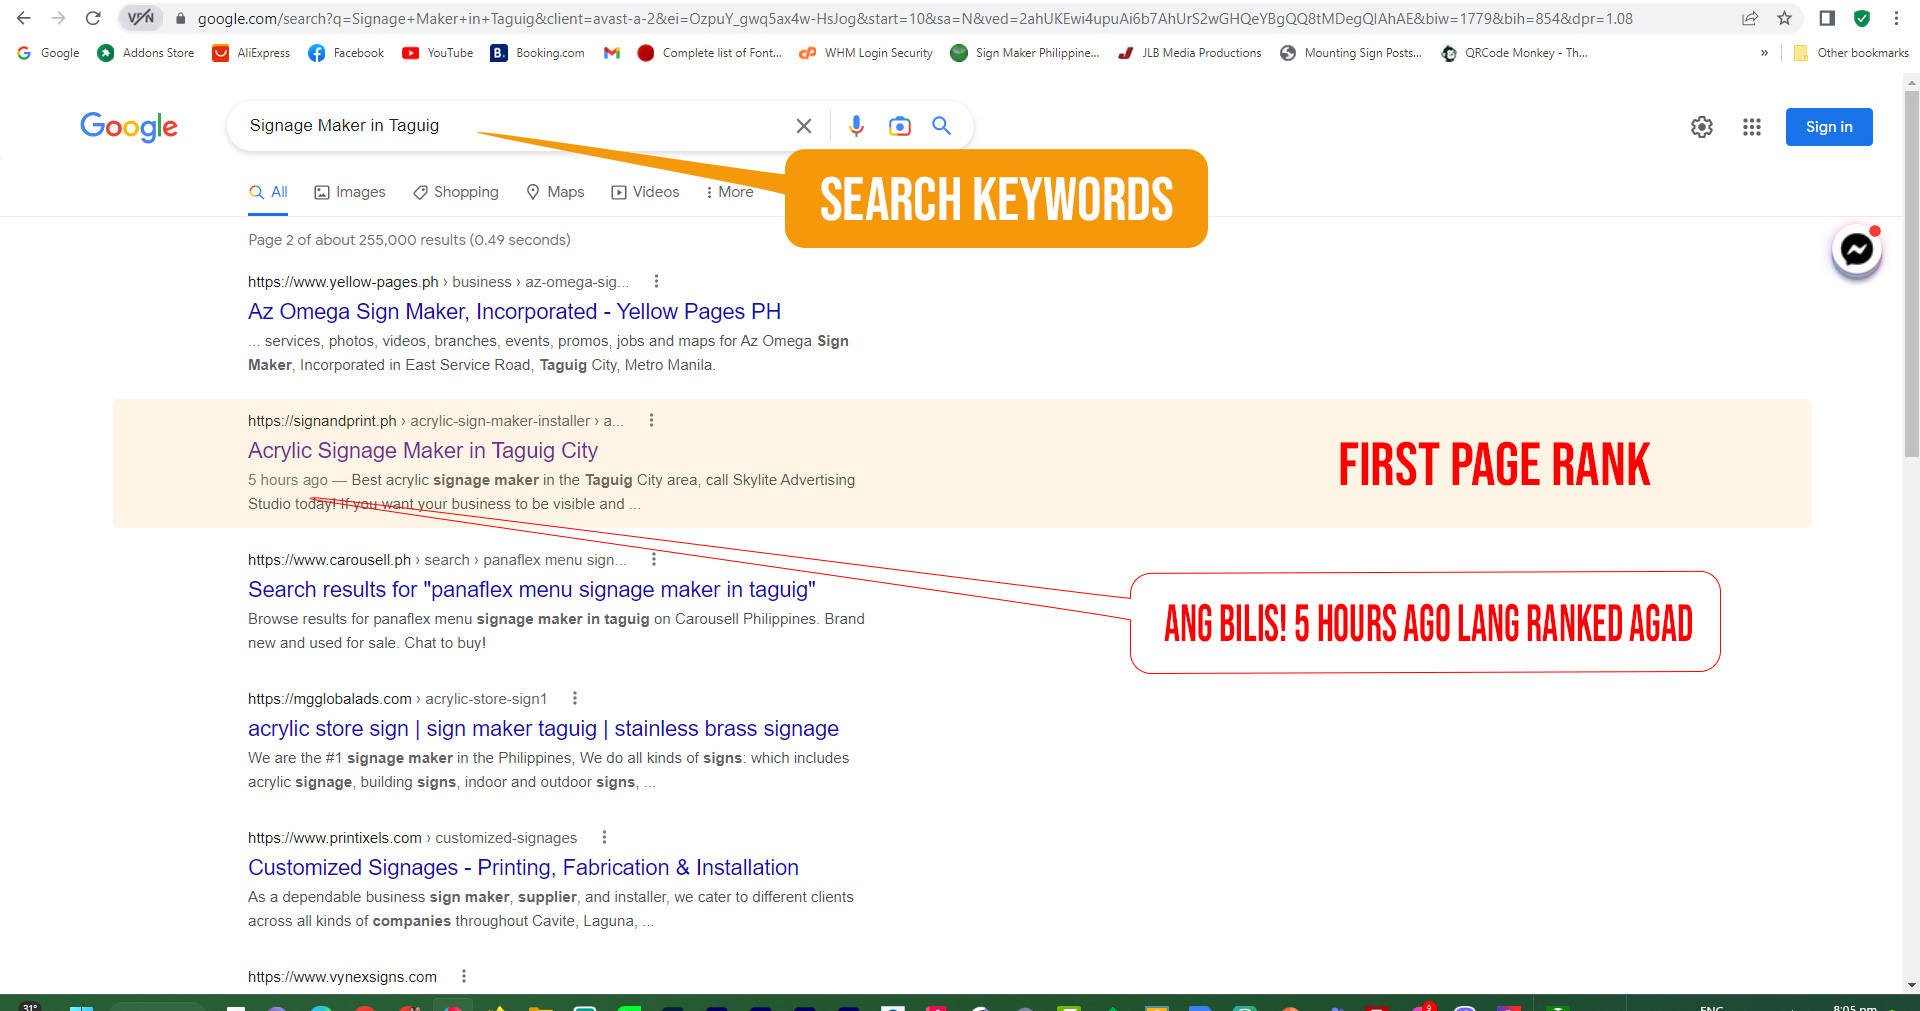 Gusto mo bang nasa first page rank ang Ad mo kay Google